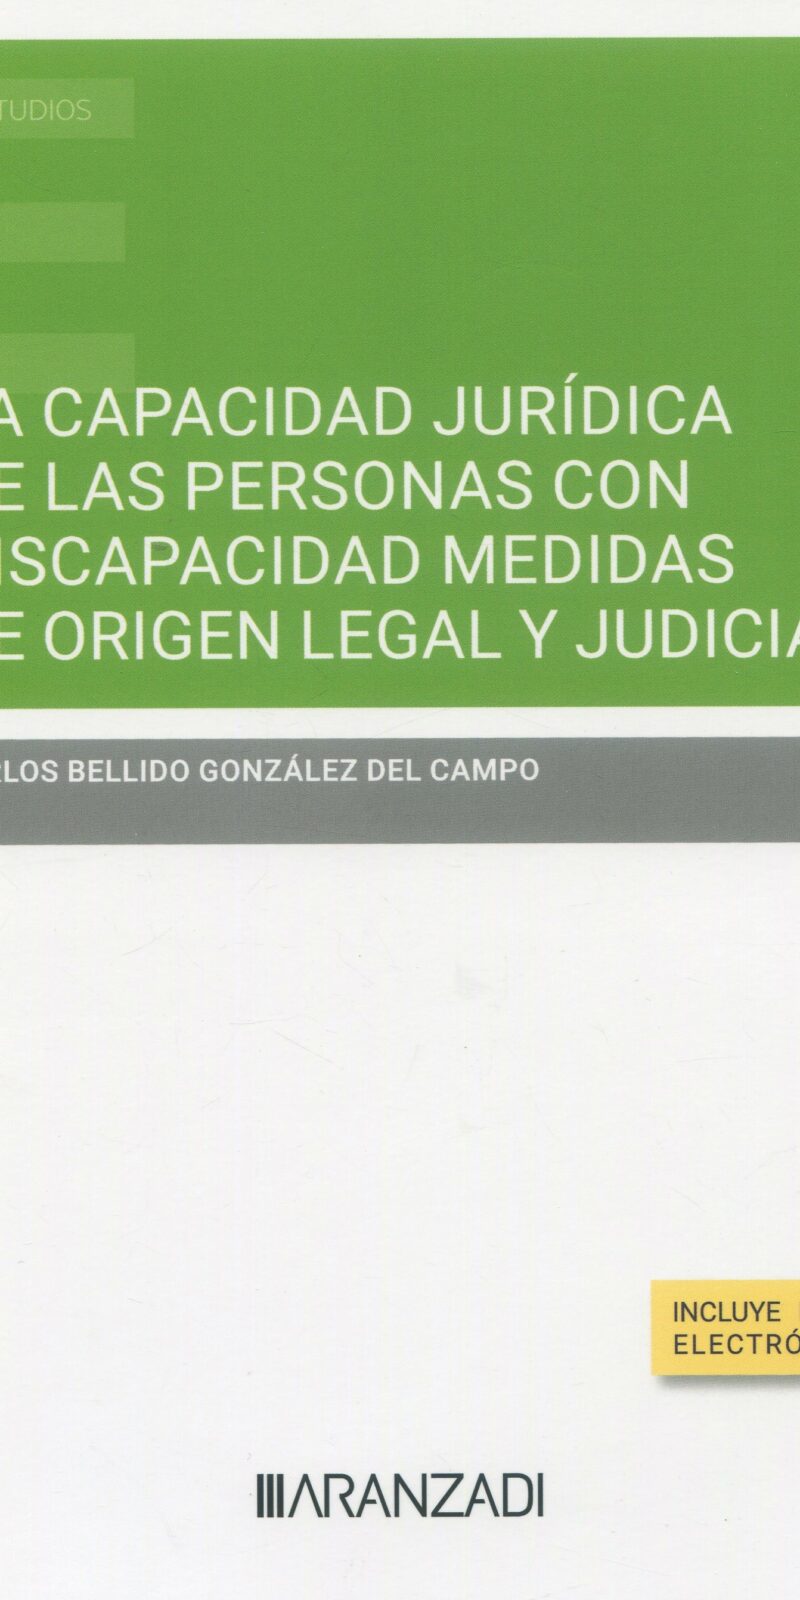 La capacidad jurídica de las personas con discapacidad medidas de origen legal y judicial 9788411635783